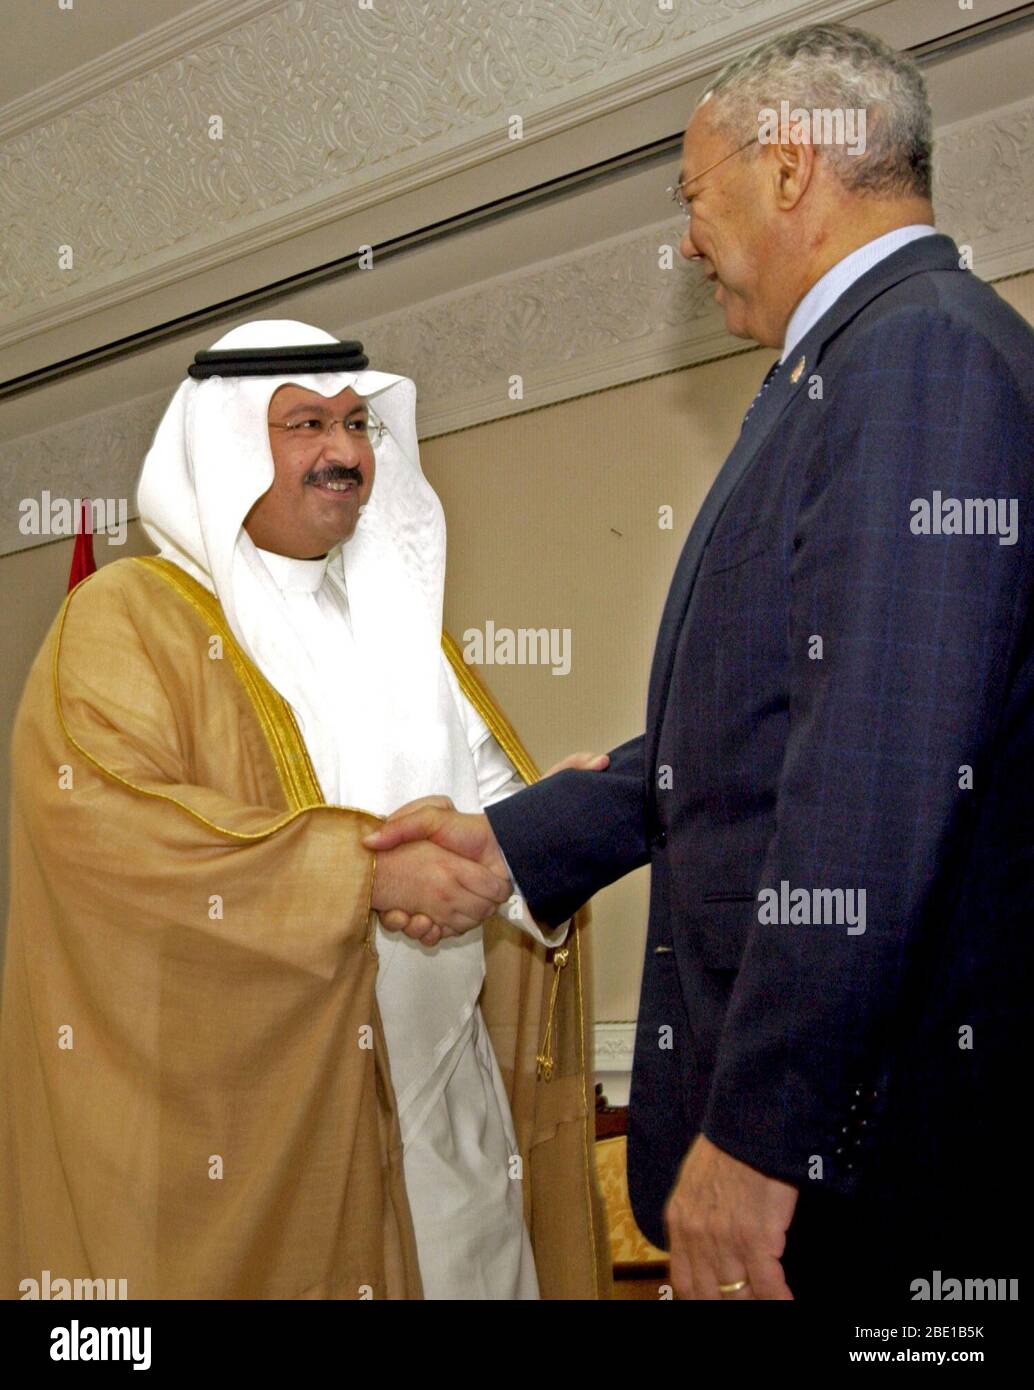 The Honorable Colin Powell (right), US Secretary of State, greets Iraqi President Sheik Ghazi al-Yawar (Ghazi Mashal Ajil al-Yawar), Interim President of Iraq, in Baghdad, Baghdad Province, Iraq (IRQ), during Operation IRAQI FREEDOM. Stock Photo